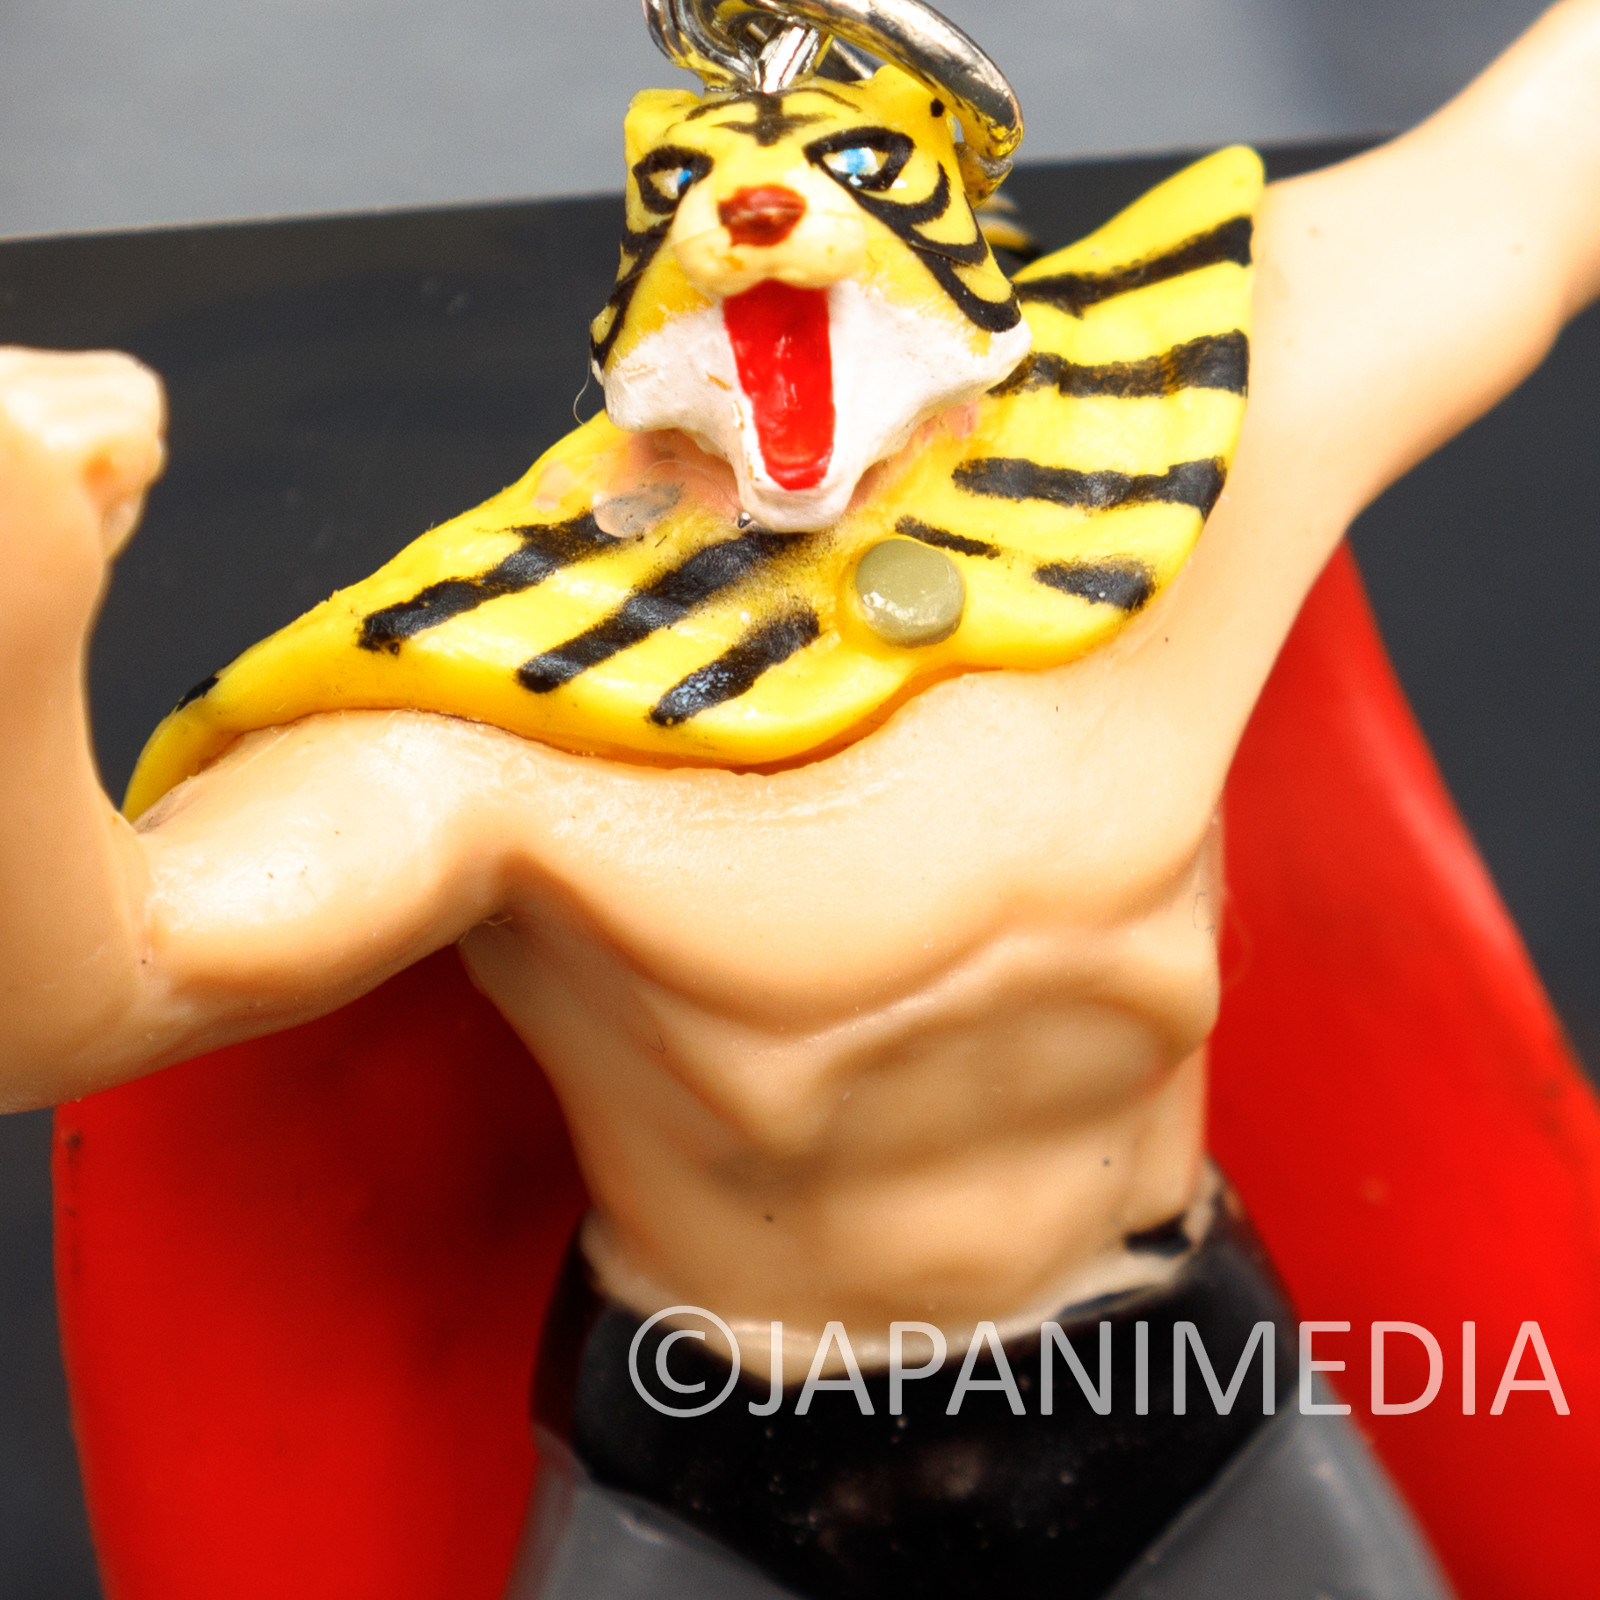 Tiger Mask Figure Strap